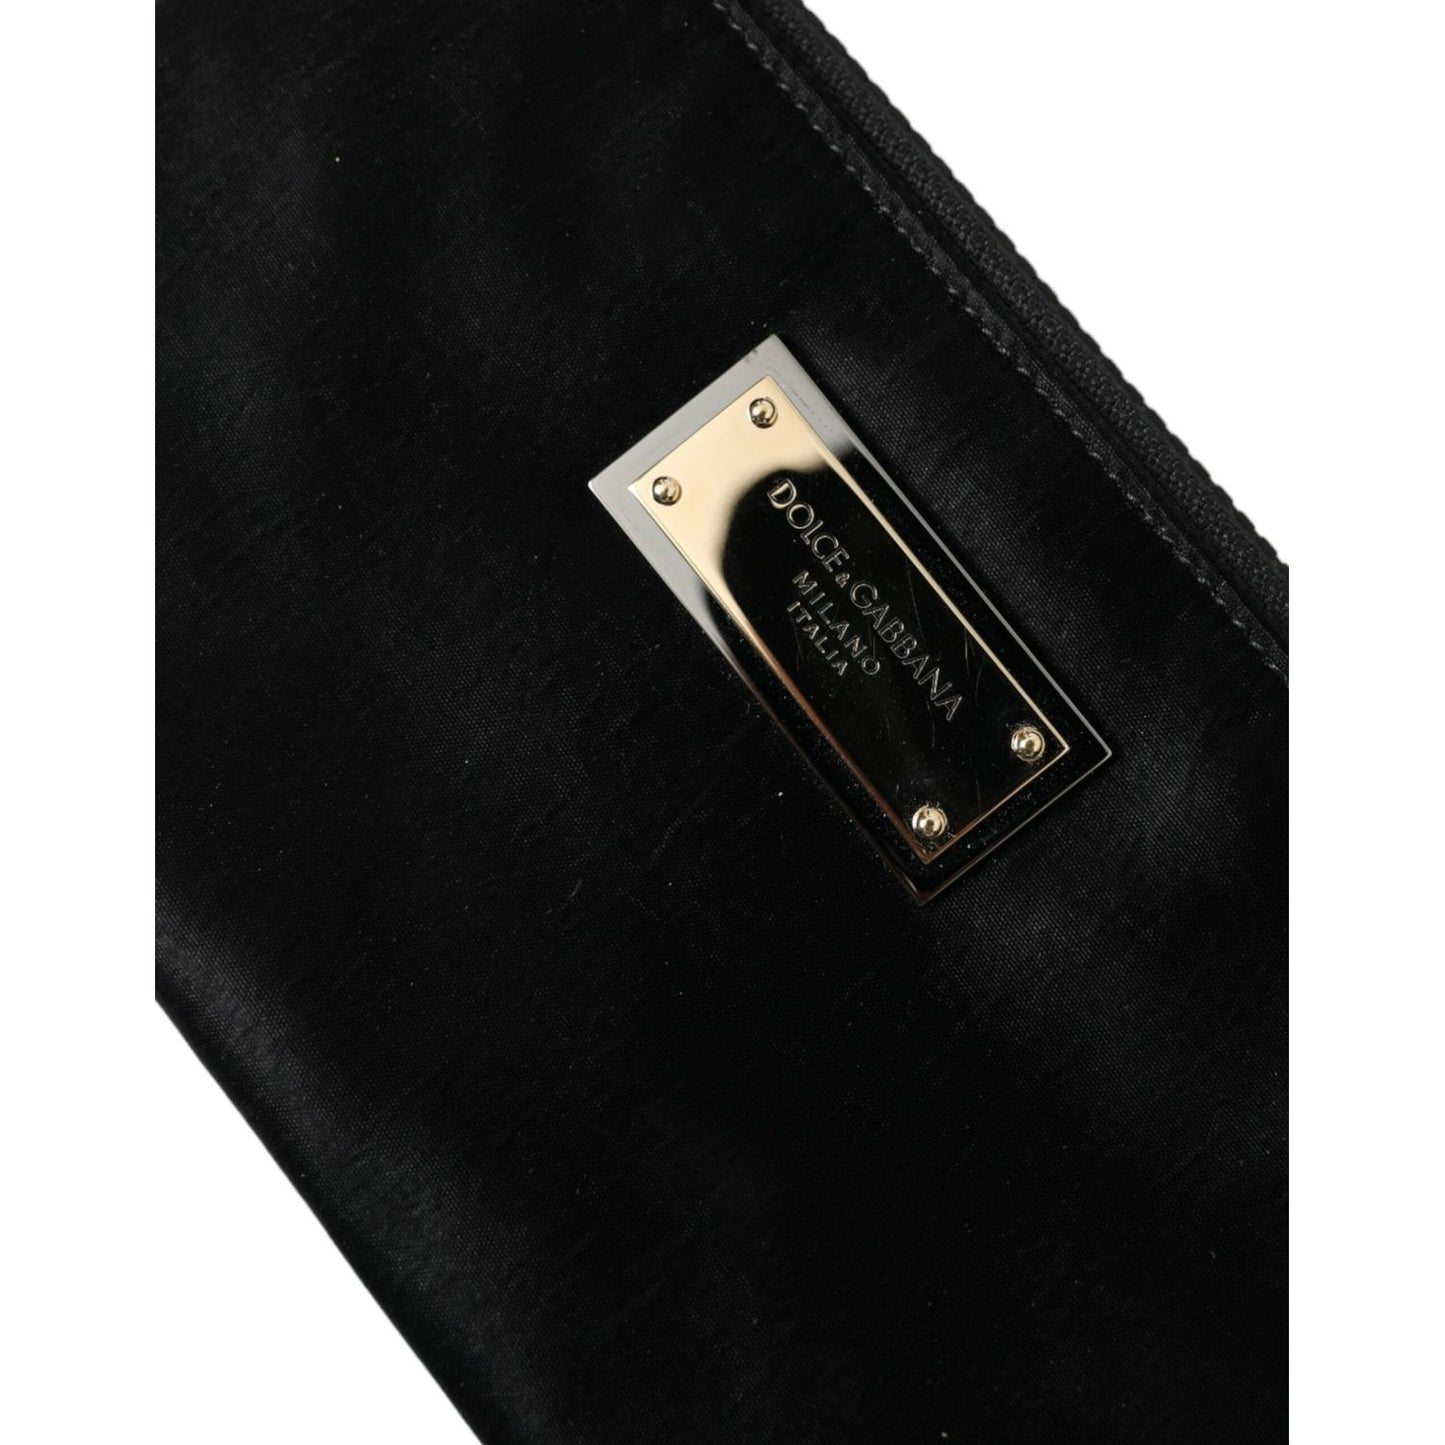 Dolce & GabbanaSleek Designer Nylon-Leather Pouch in BlackMcRichard Designer Brands£309.00